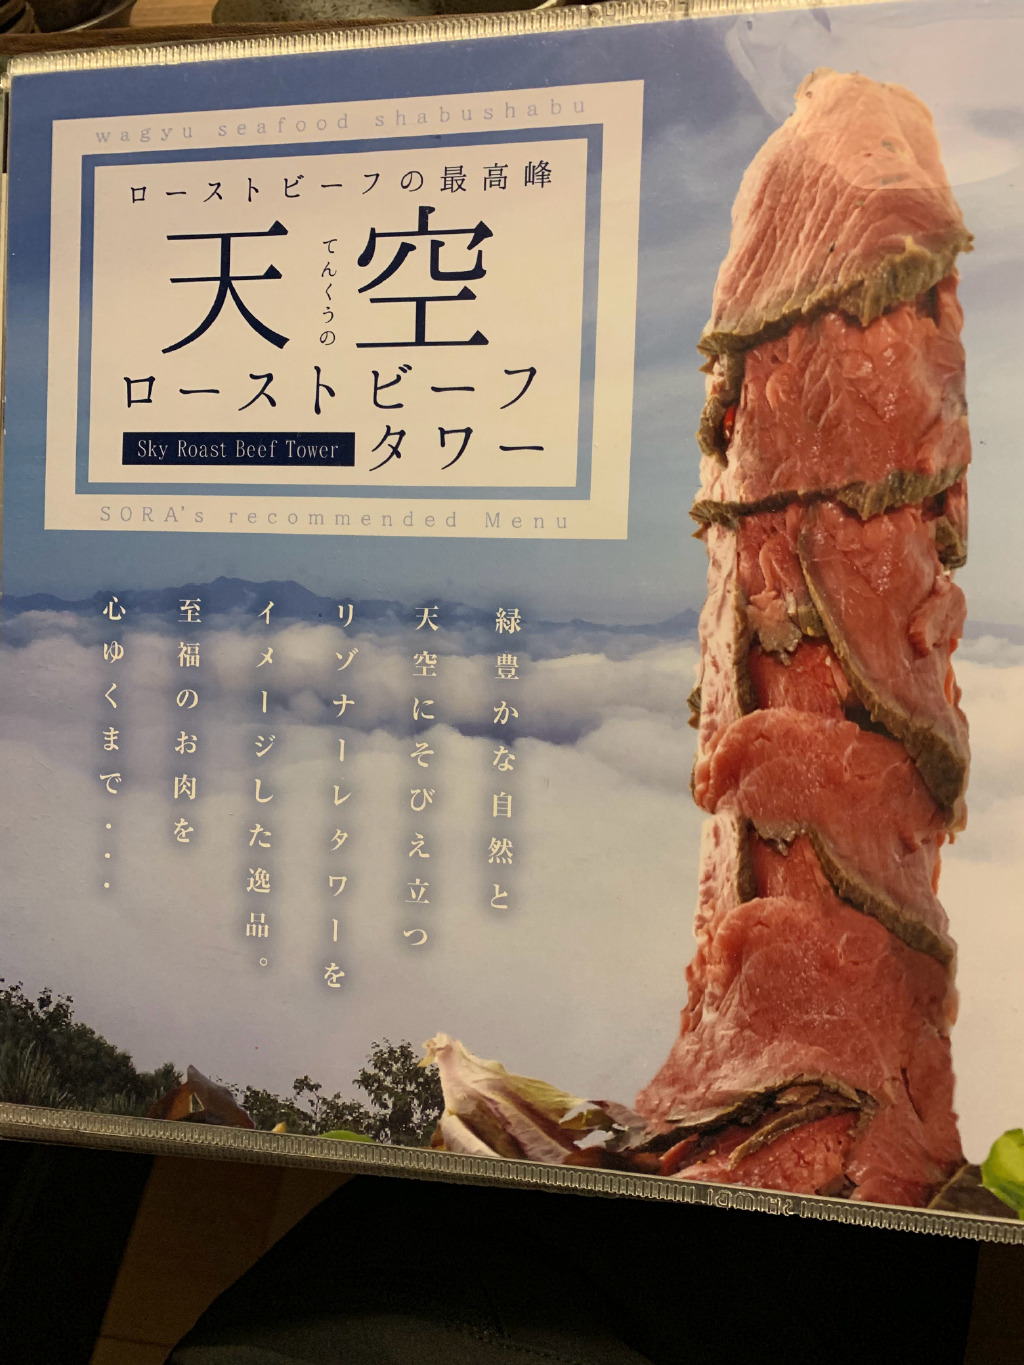 啊拉，不愧是日本的餐厅菜单啊…… ​​​​